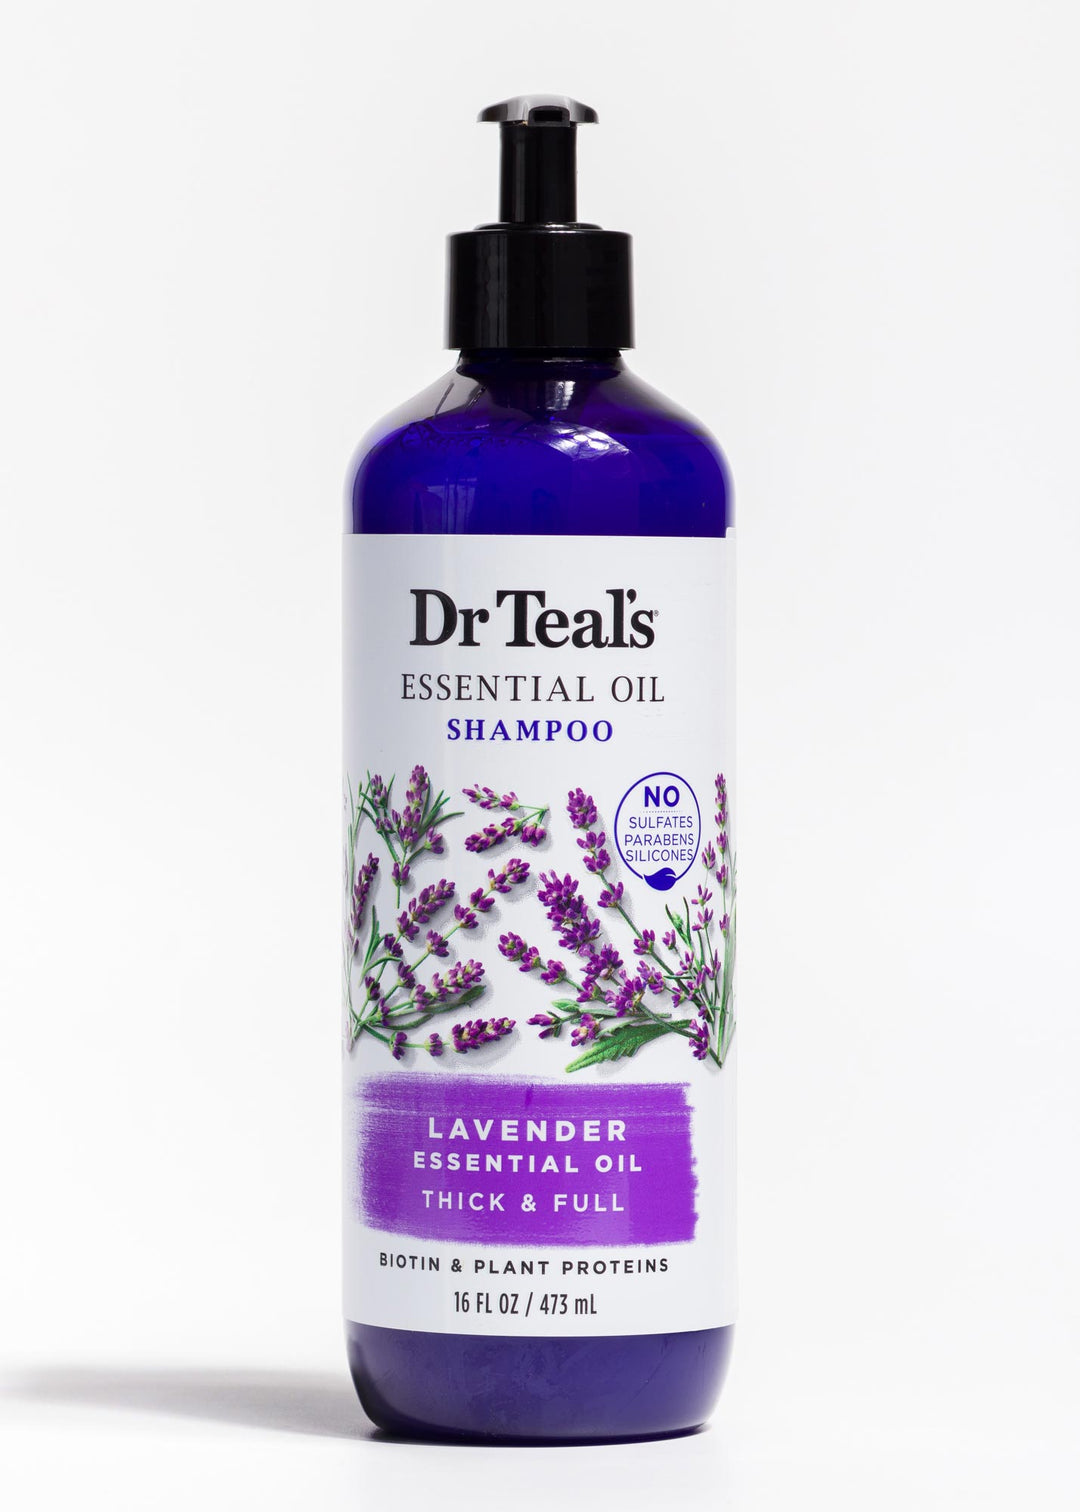 precio shampoo dr teals lavanda romanamx